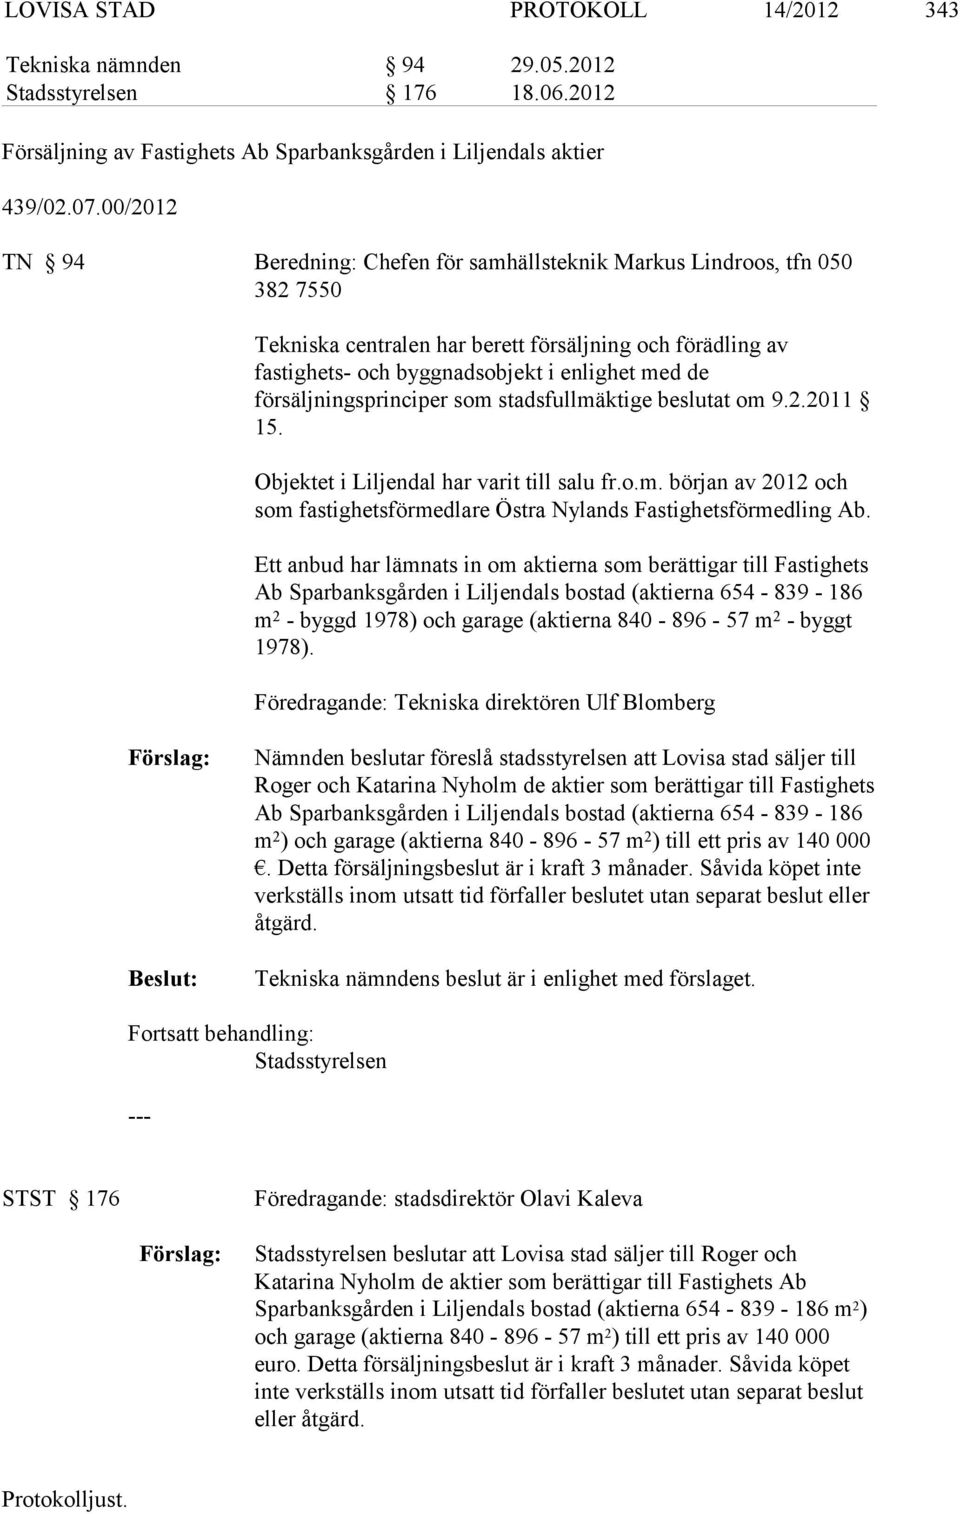 försäljningsprinciper som stadsfullmäktige beslutat om 9.2.2011 15. Objektet i Liljendal har varit till salu fr.o.m. början av 2012 och som fastighetsförmedlare Östra Nylands Fastighetsförmedling Ab.